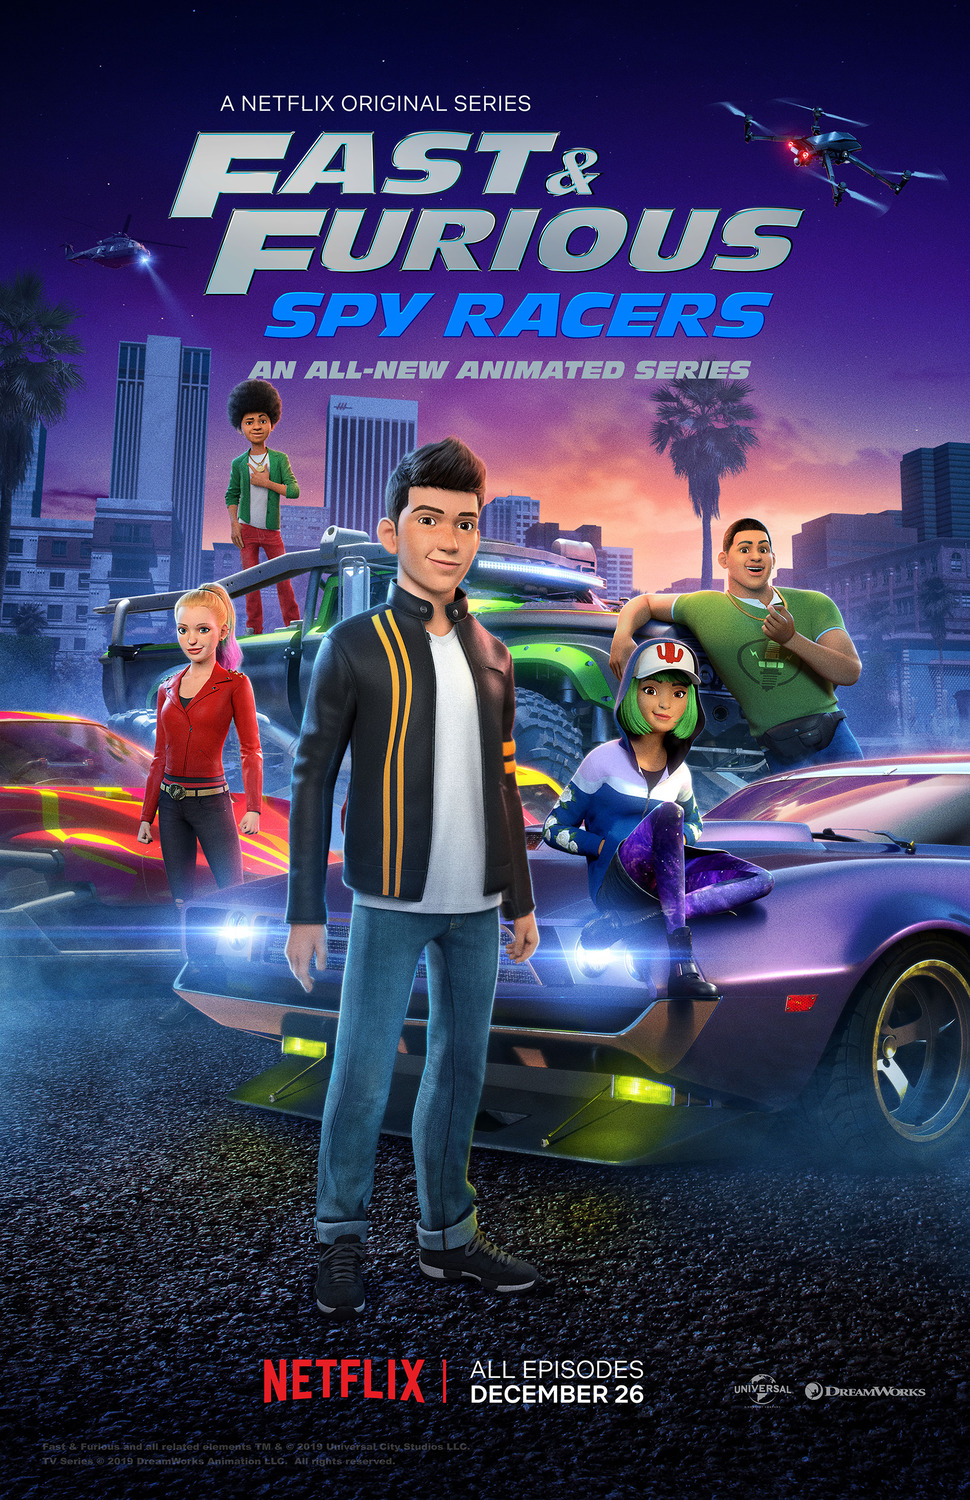 ดูหนังออนไลน์ฟรี Fast & Furious Spy Racers (2019) Season1 EP3 เร็ว…แรง ทะลุนรก ซิ่งสยบโลก ตอนที่ 3 (พากย์ไทย)